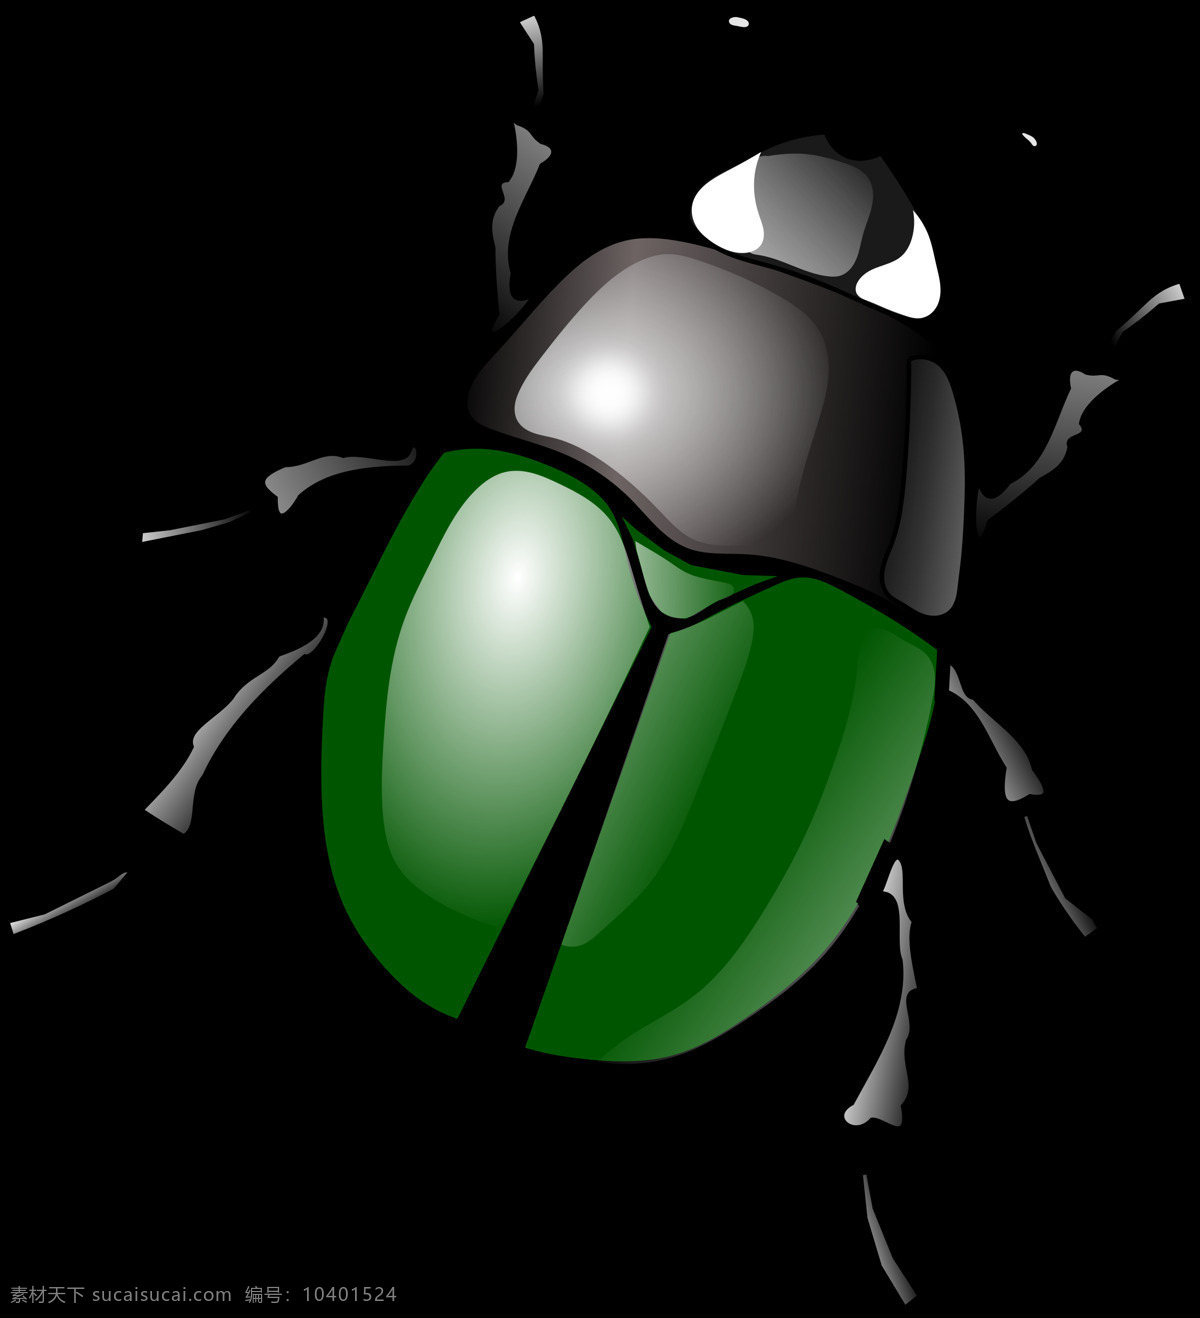 绿色 甲虫 免 抠 透明 图 层 恐怖虫子图片 世界 上 最 可怕 虫子 小虫子图片 昆虫图片 死虫子图片 大虫子 甲壳虫 大全 甲虫图片 各种甲虫 各种昆虫 昆虫图片大全